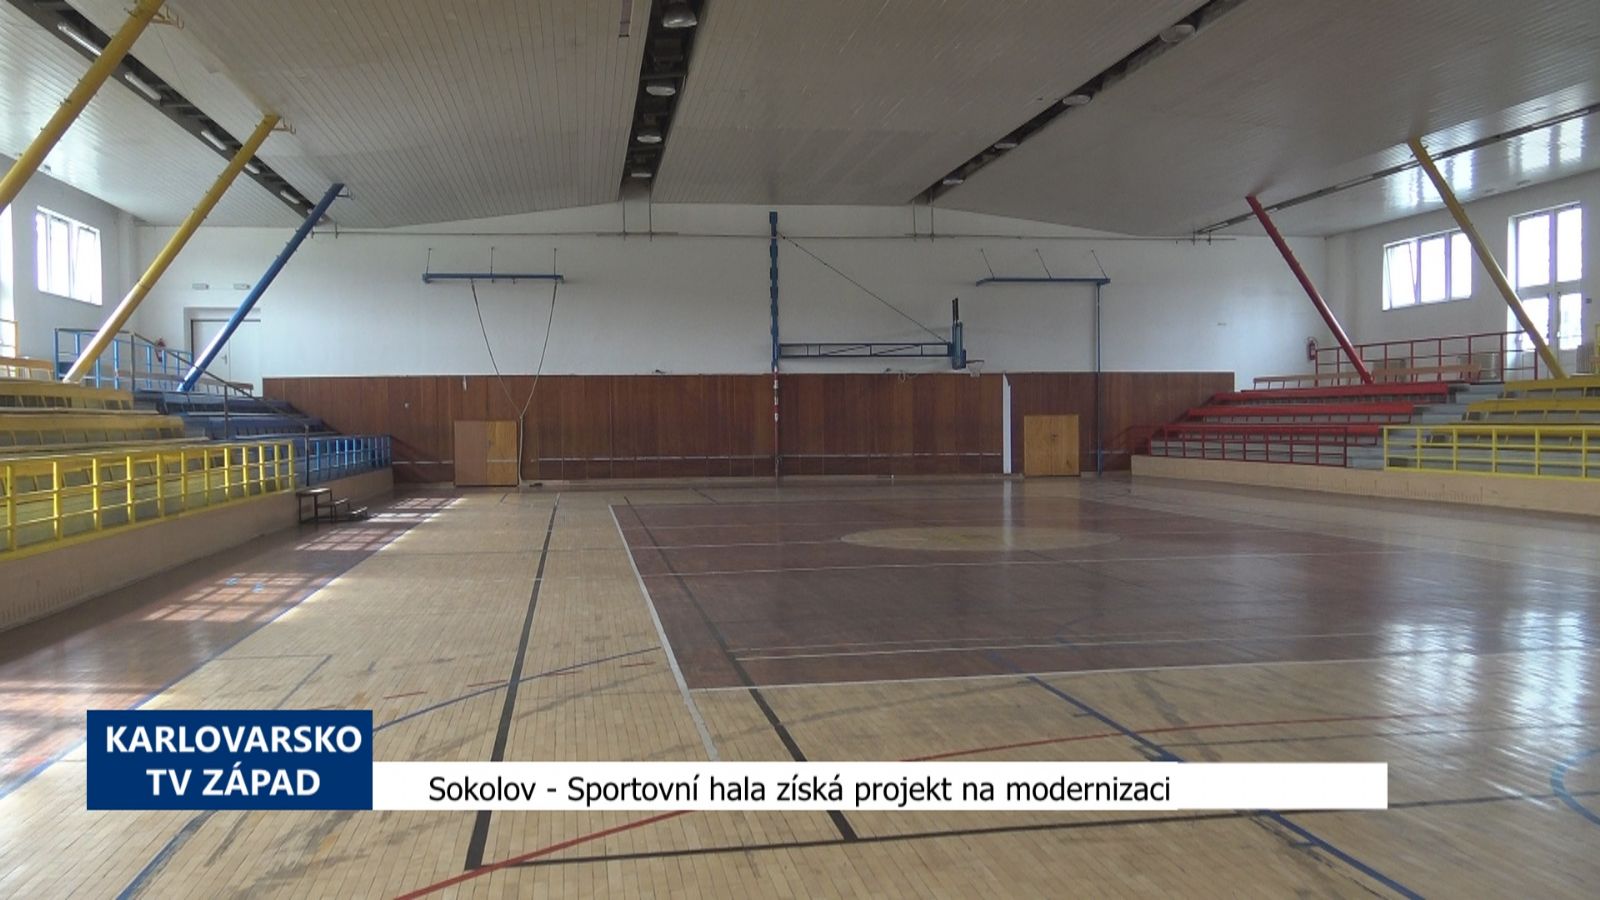 Sokolov: Sportovní hala získá projekt na modernizaci (TV Západ)